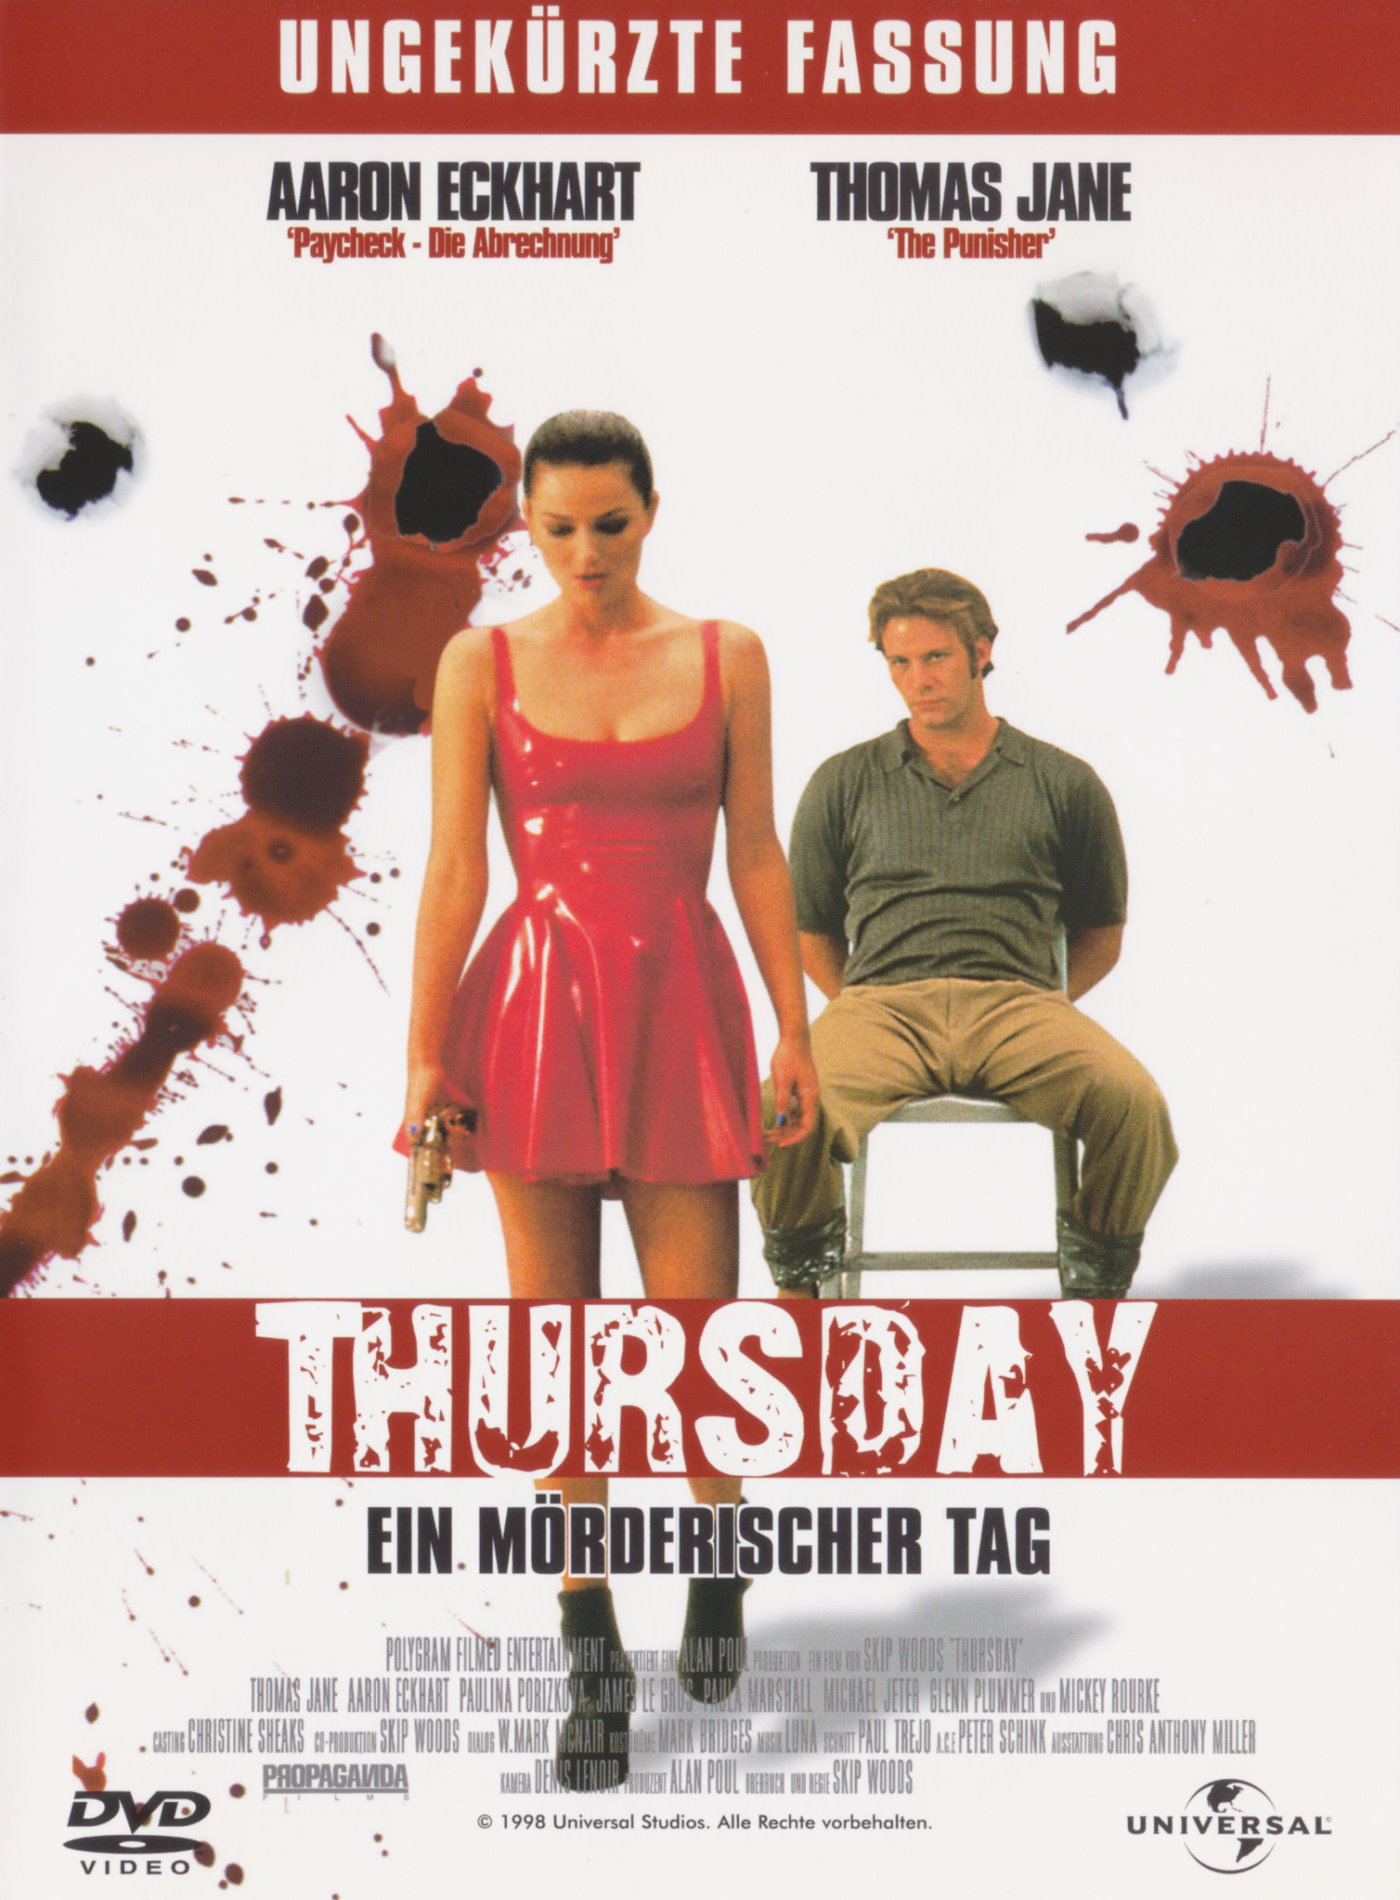 Cover - Thursday - Ein mörderischer Tag.jpg